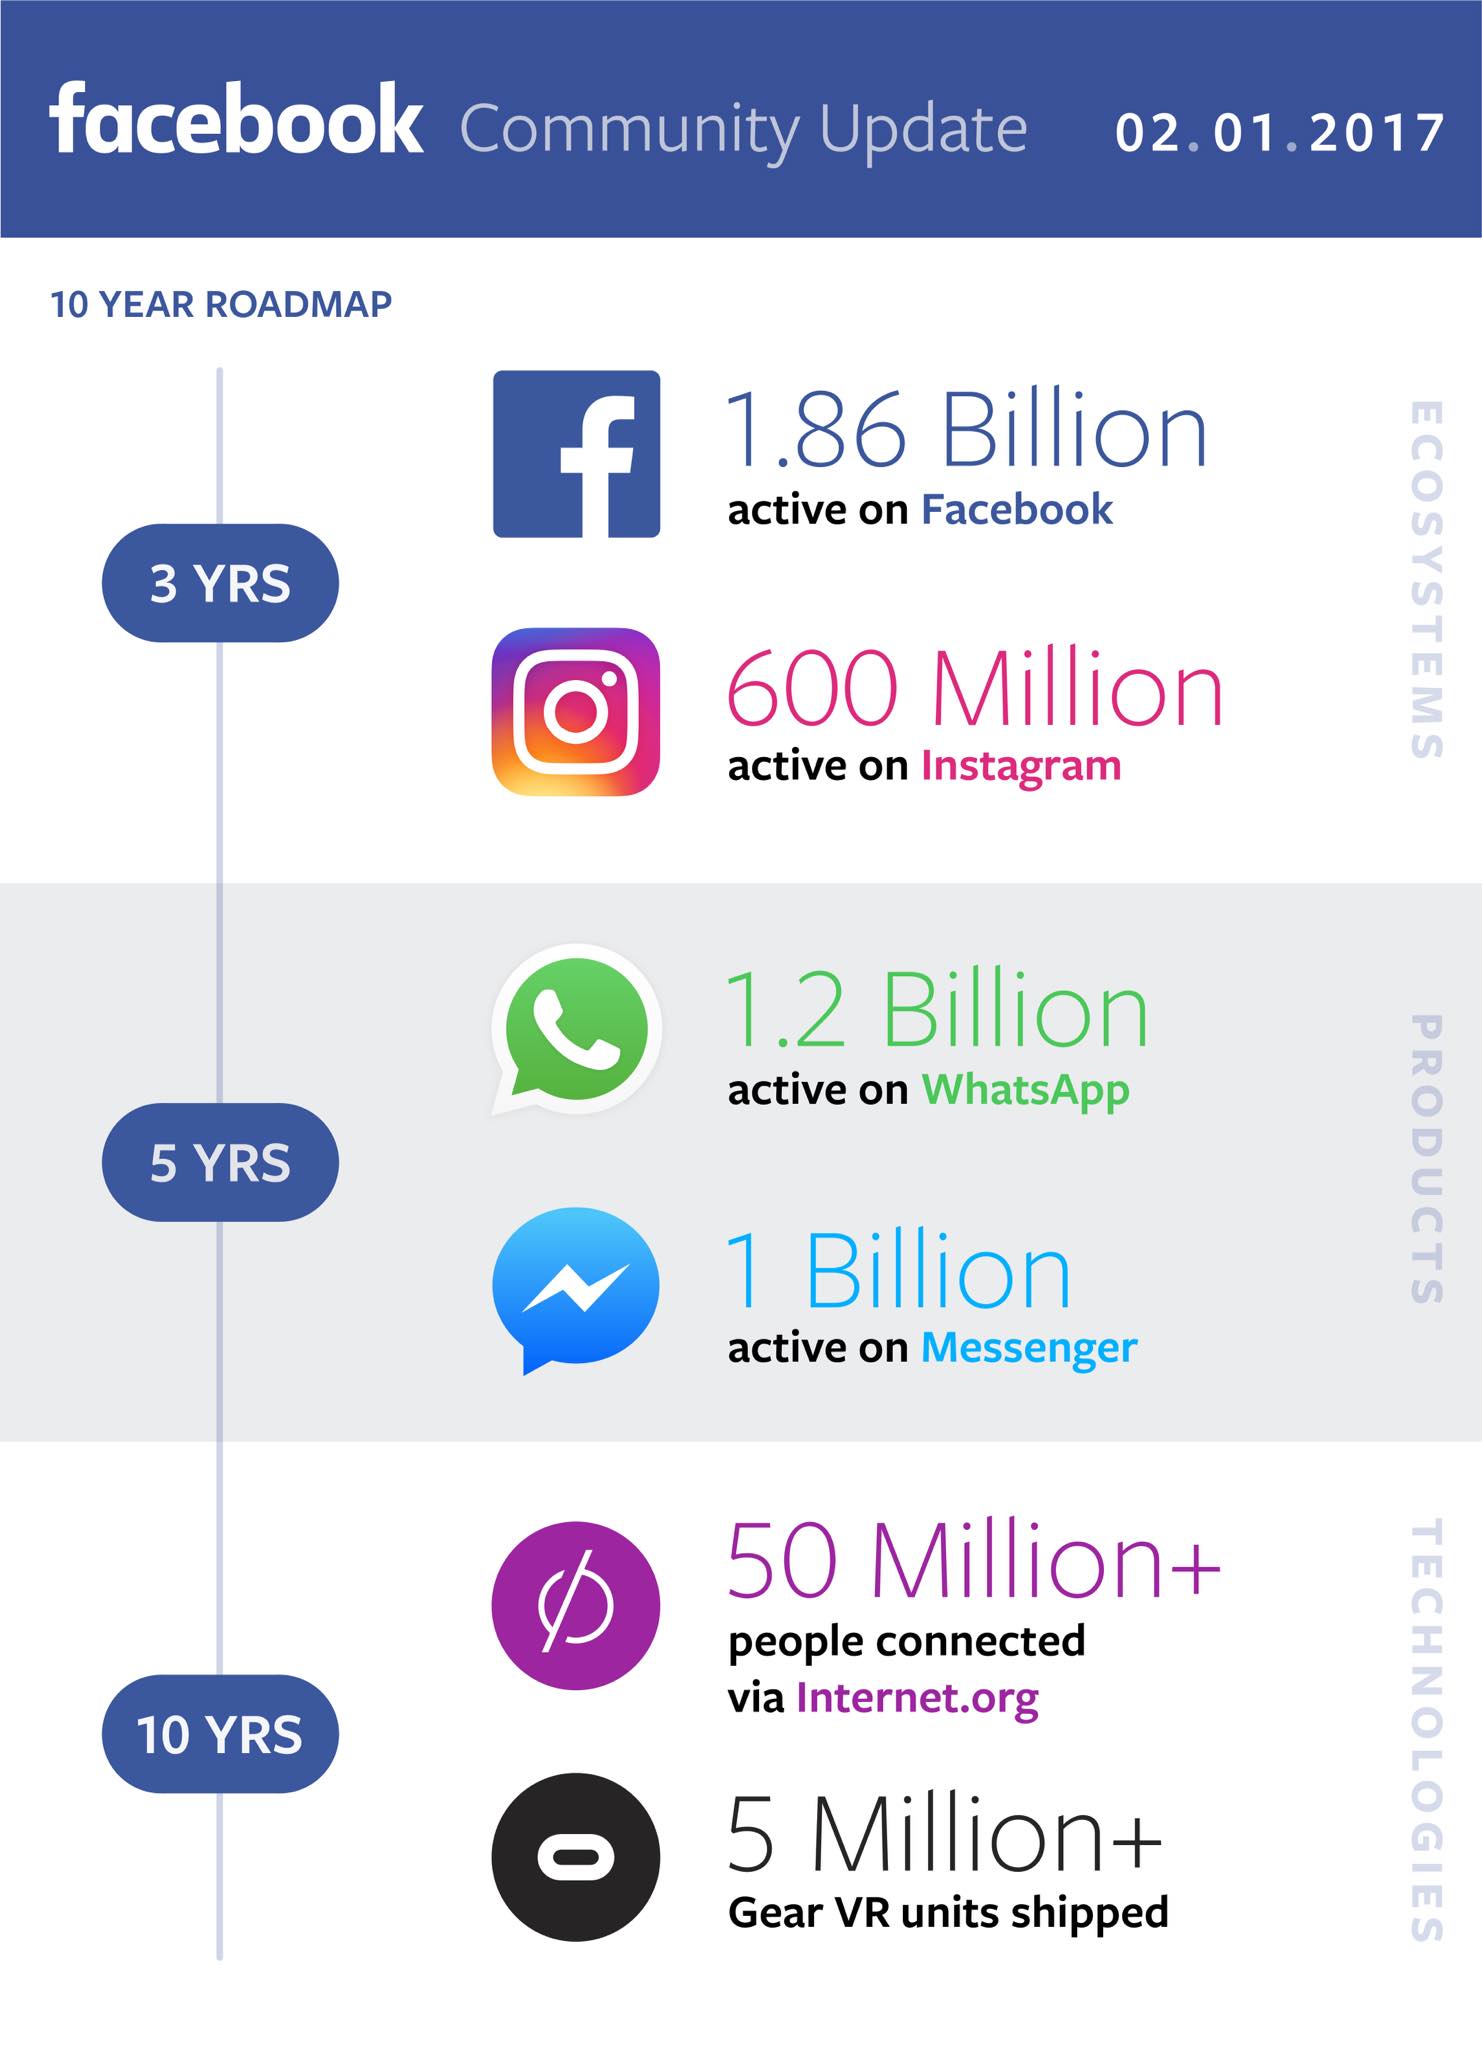 alt="Facebook 10-year Roadmap"